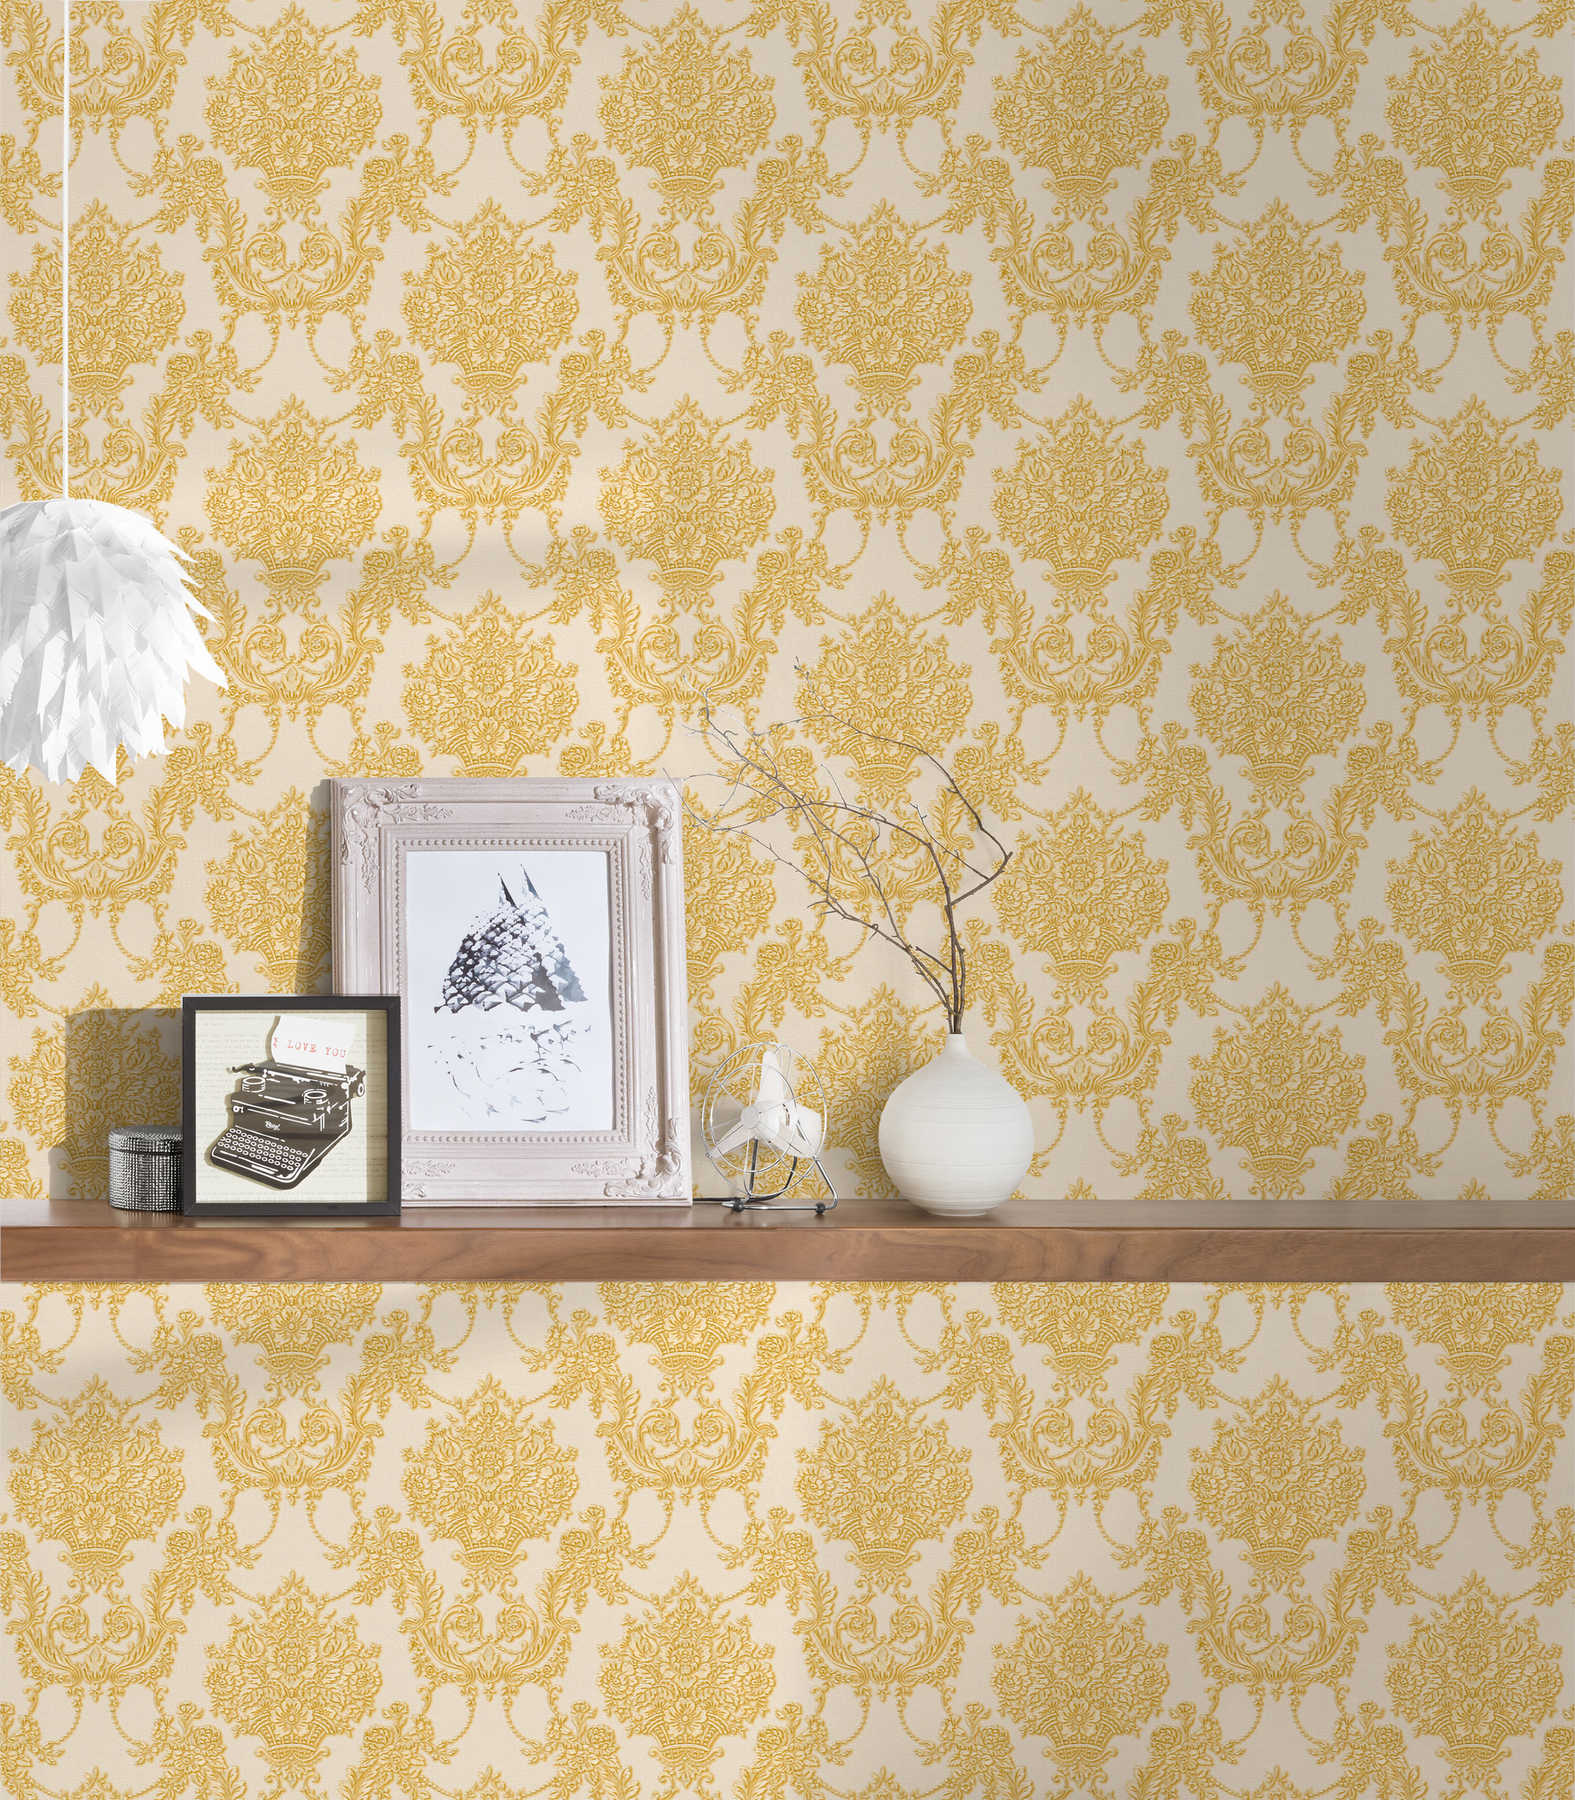             Gouden barok behang met bloemmotief - crème, metallic
        